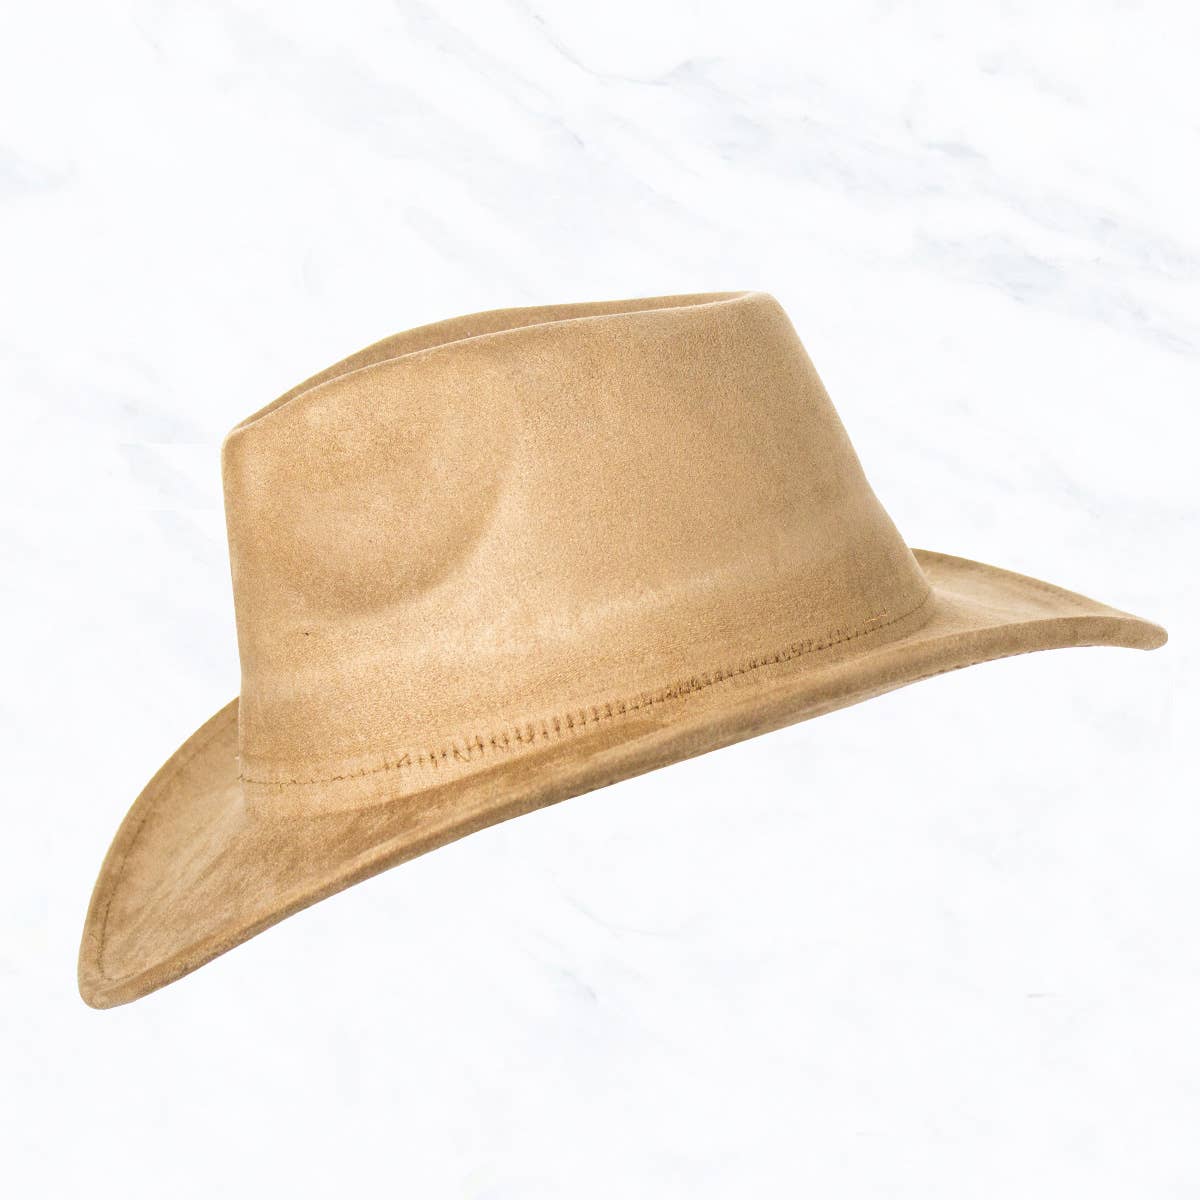 Suzie Q USA - Suede Regular Cowboy Fedora Hat: Black